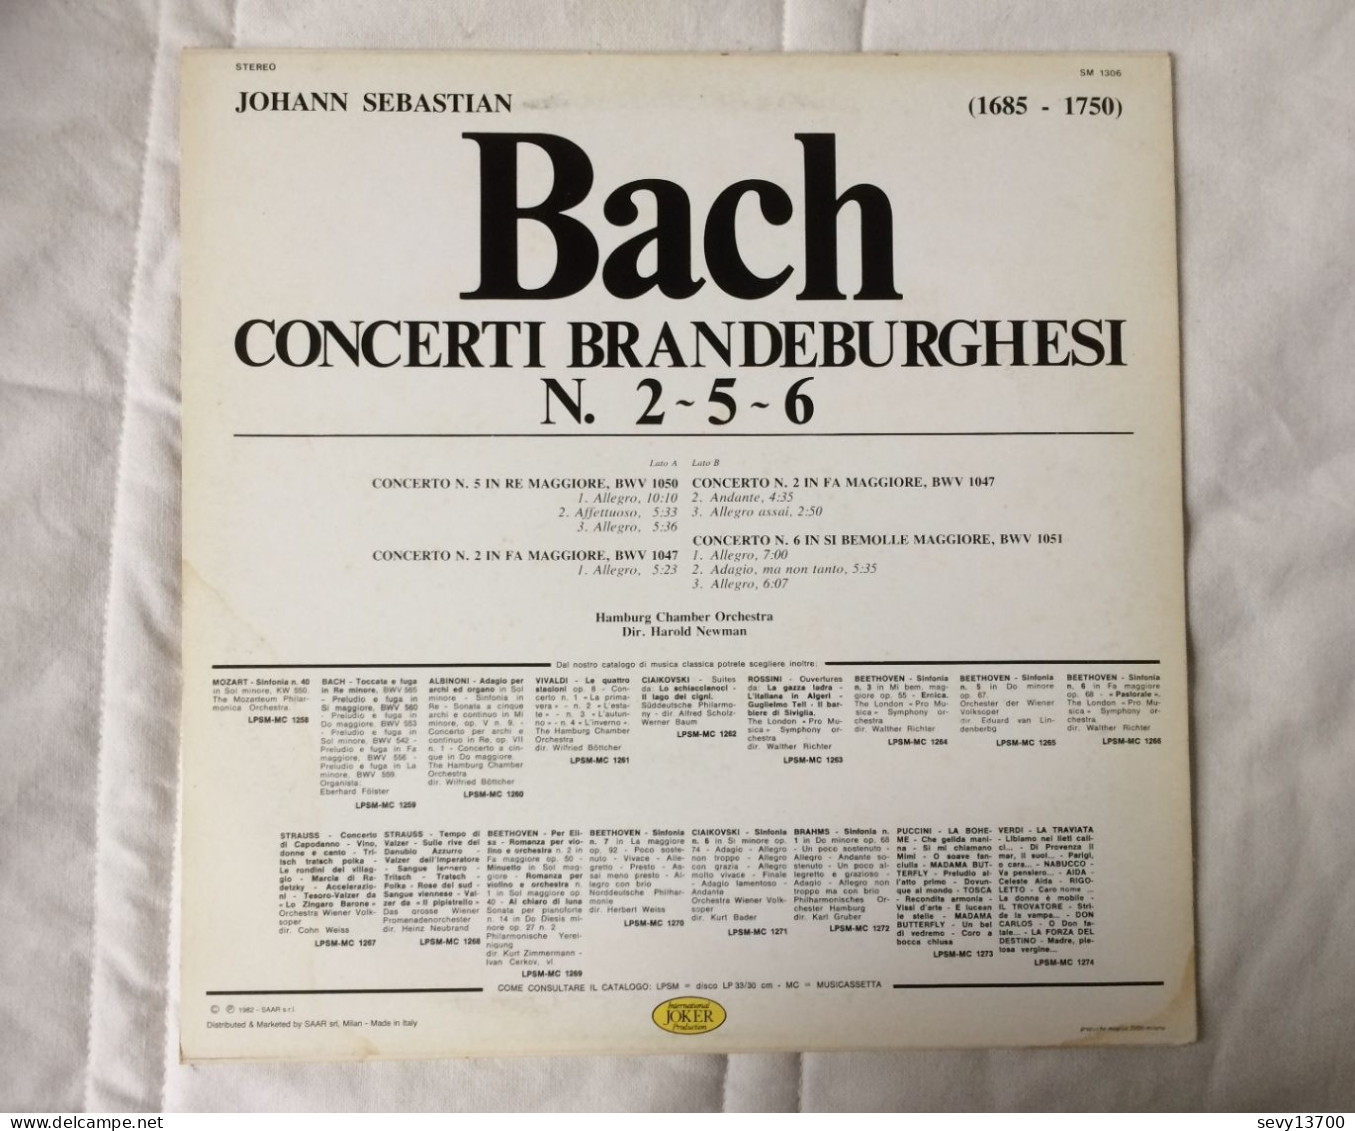 4 Disques 33 tours Dvorak Symphonie nouveau monde - Bizet Carmen - Bach Concerti